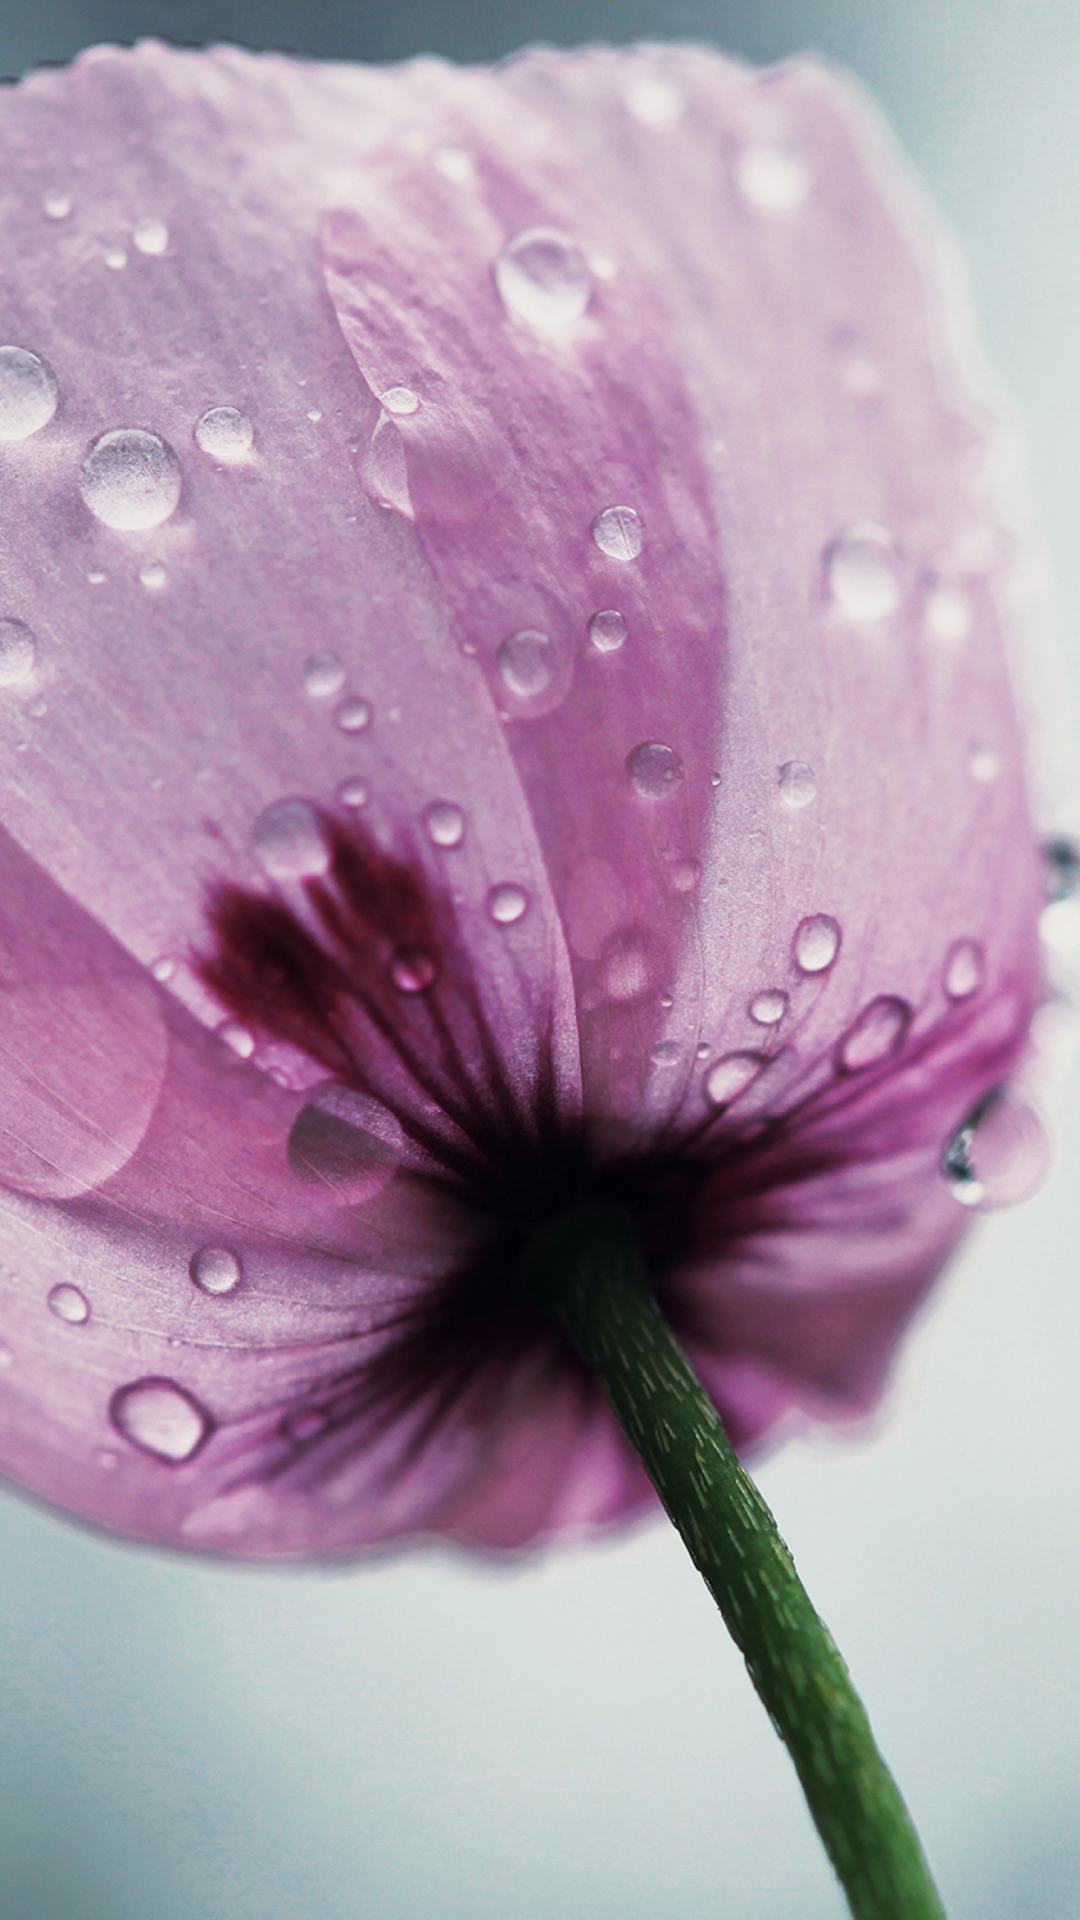 Dew Drops On Flower Petals wallpaper 1080x1920